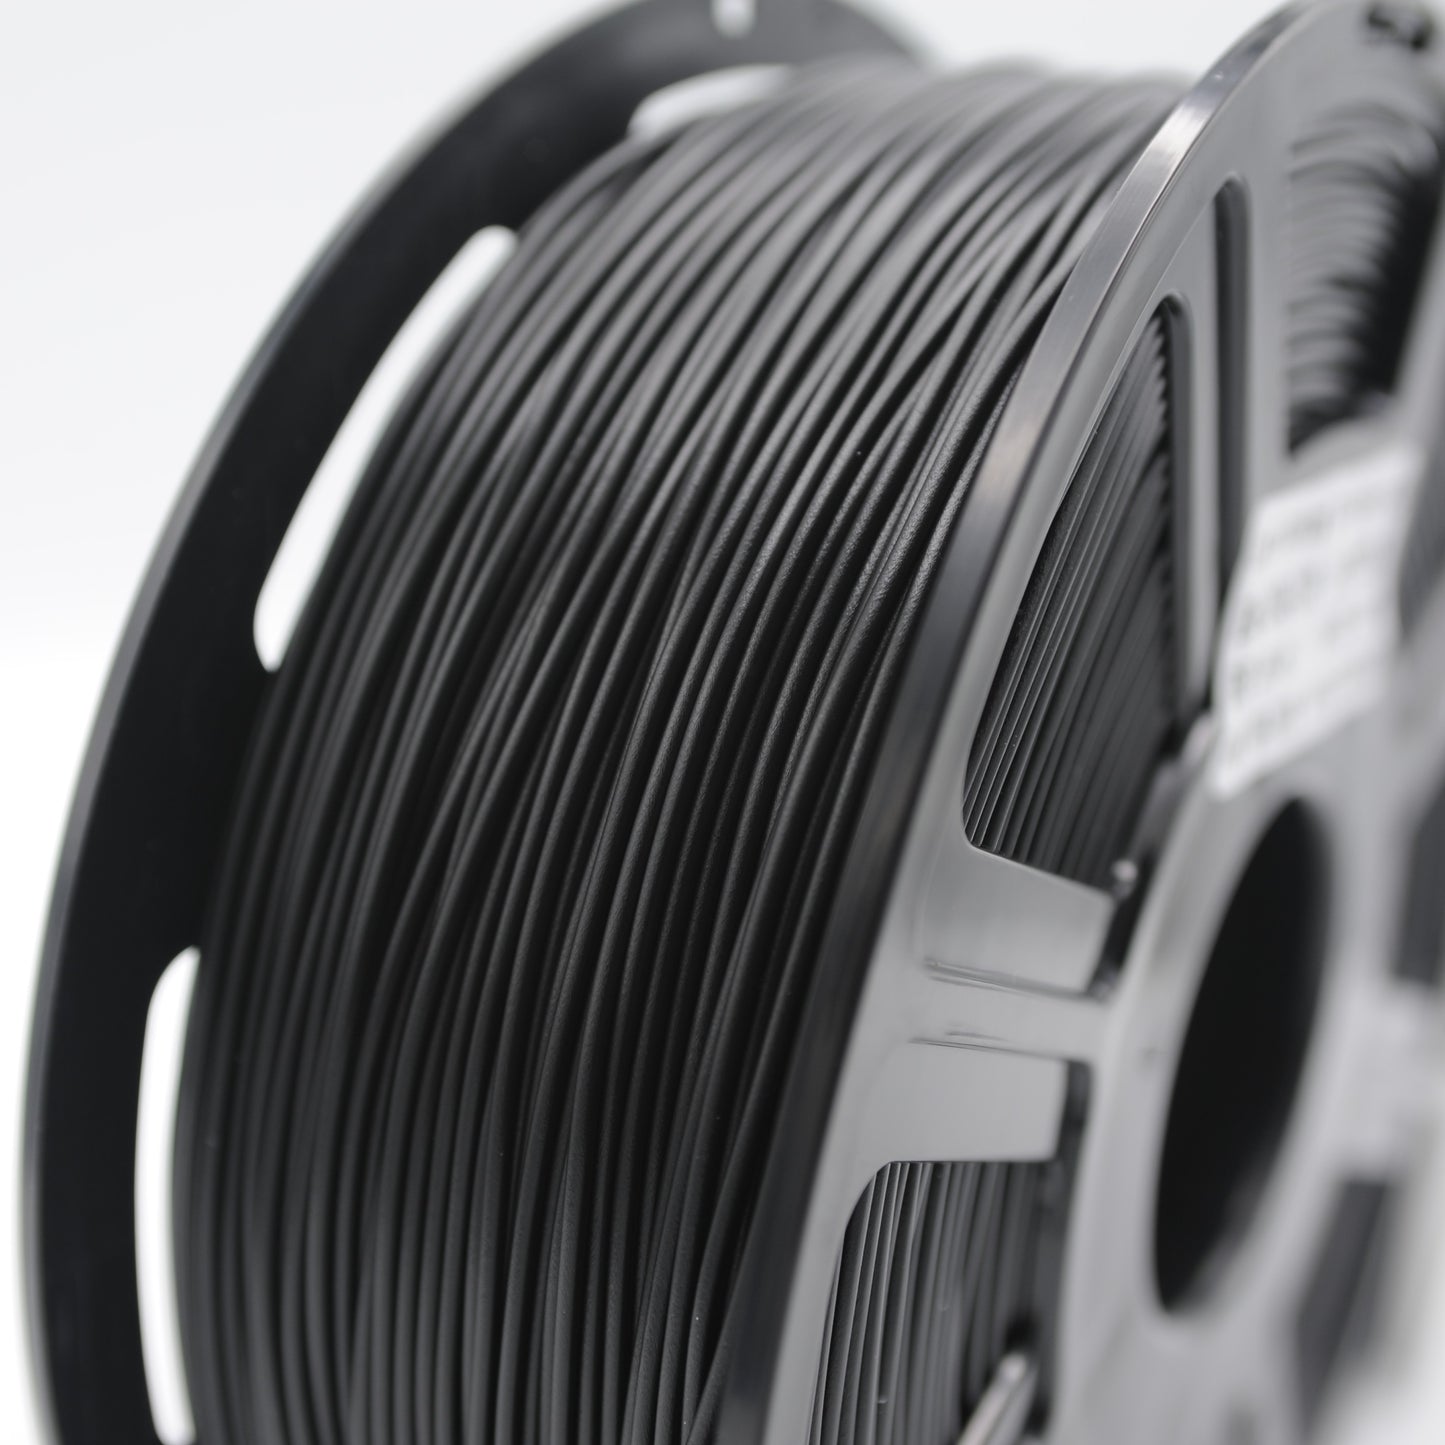 LayerWorks rPLA Filament 1.75mm